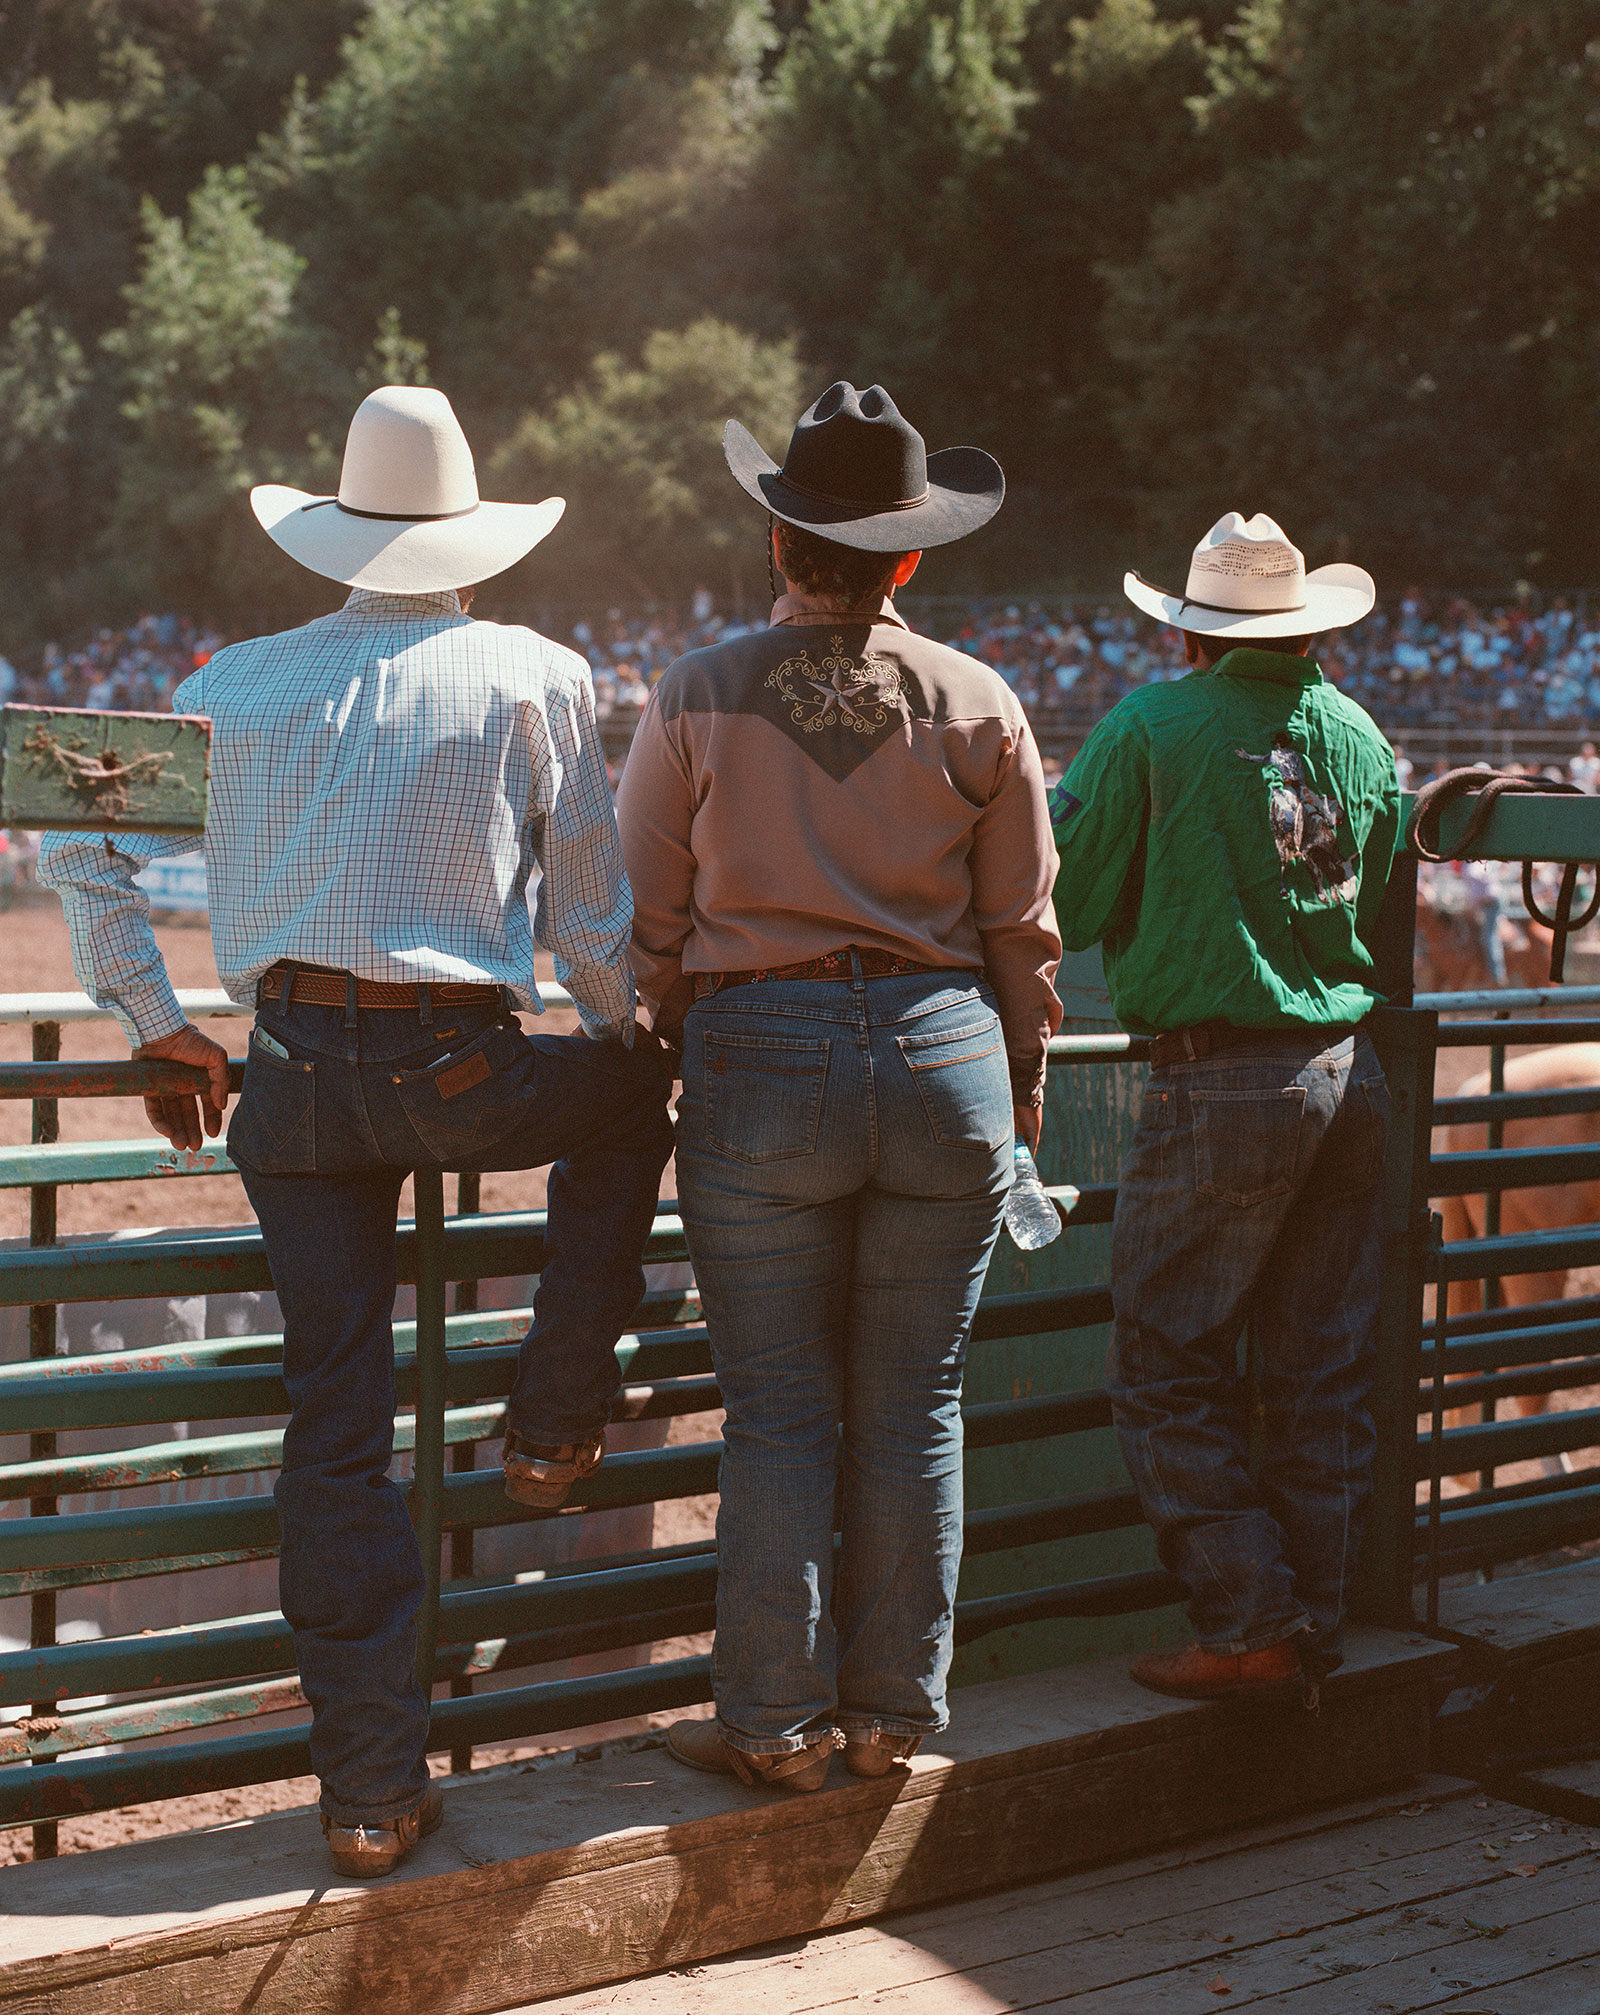 cow-boys regardant un rodéo de l'autre côté de la clôture